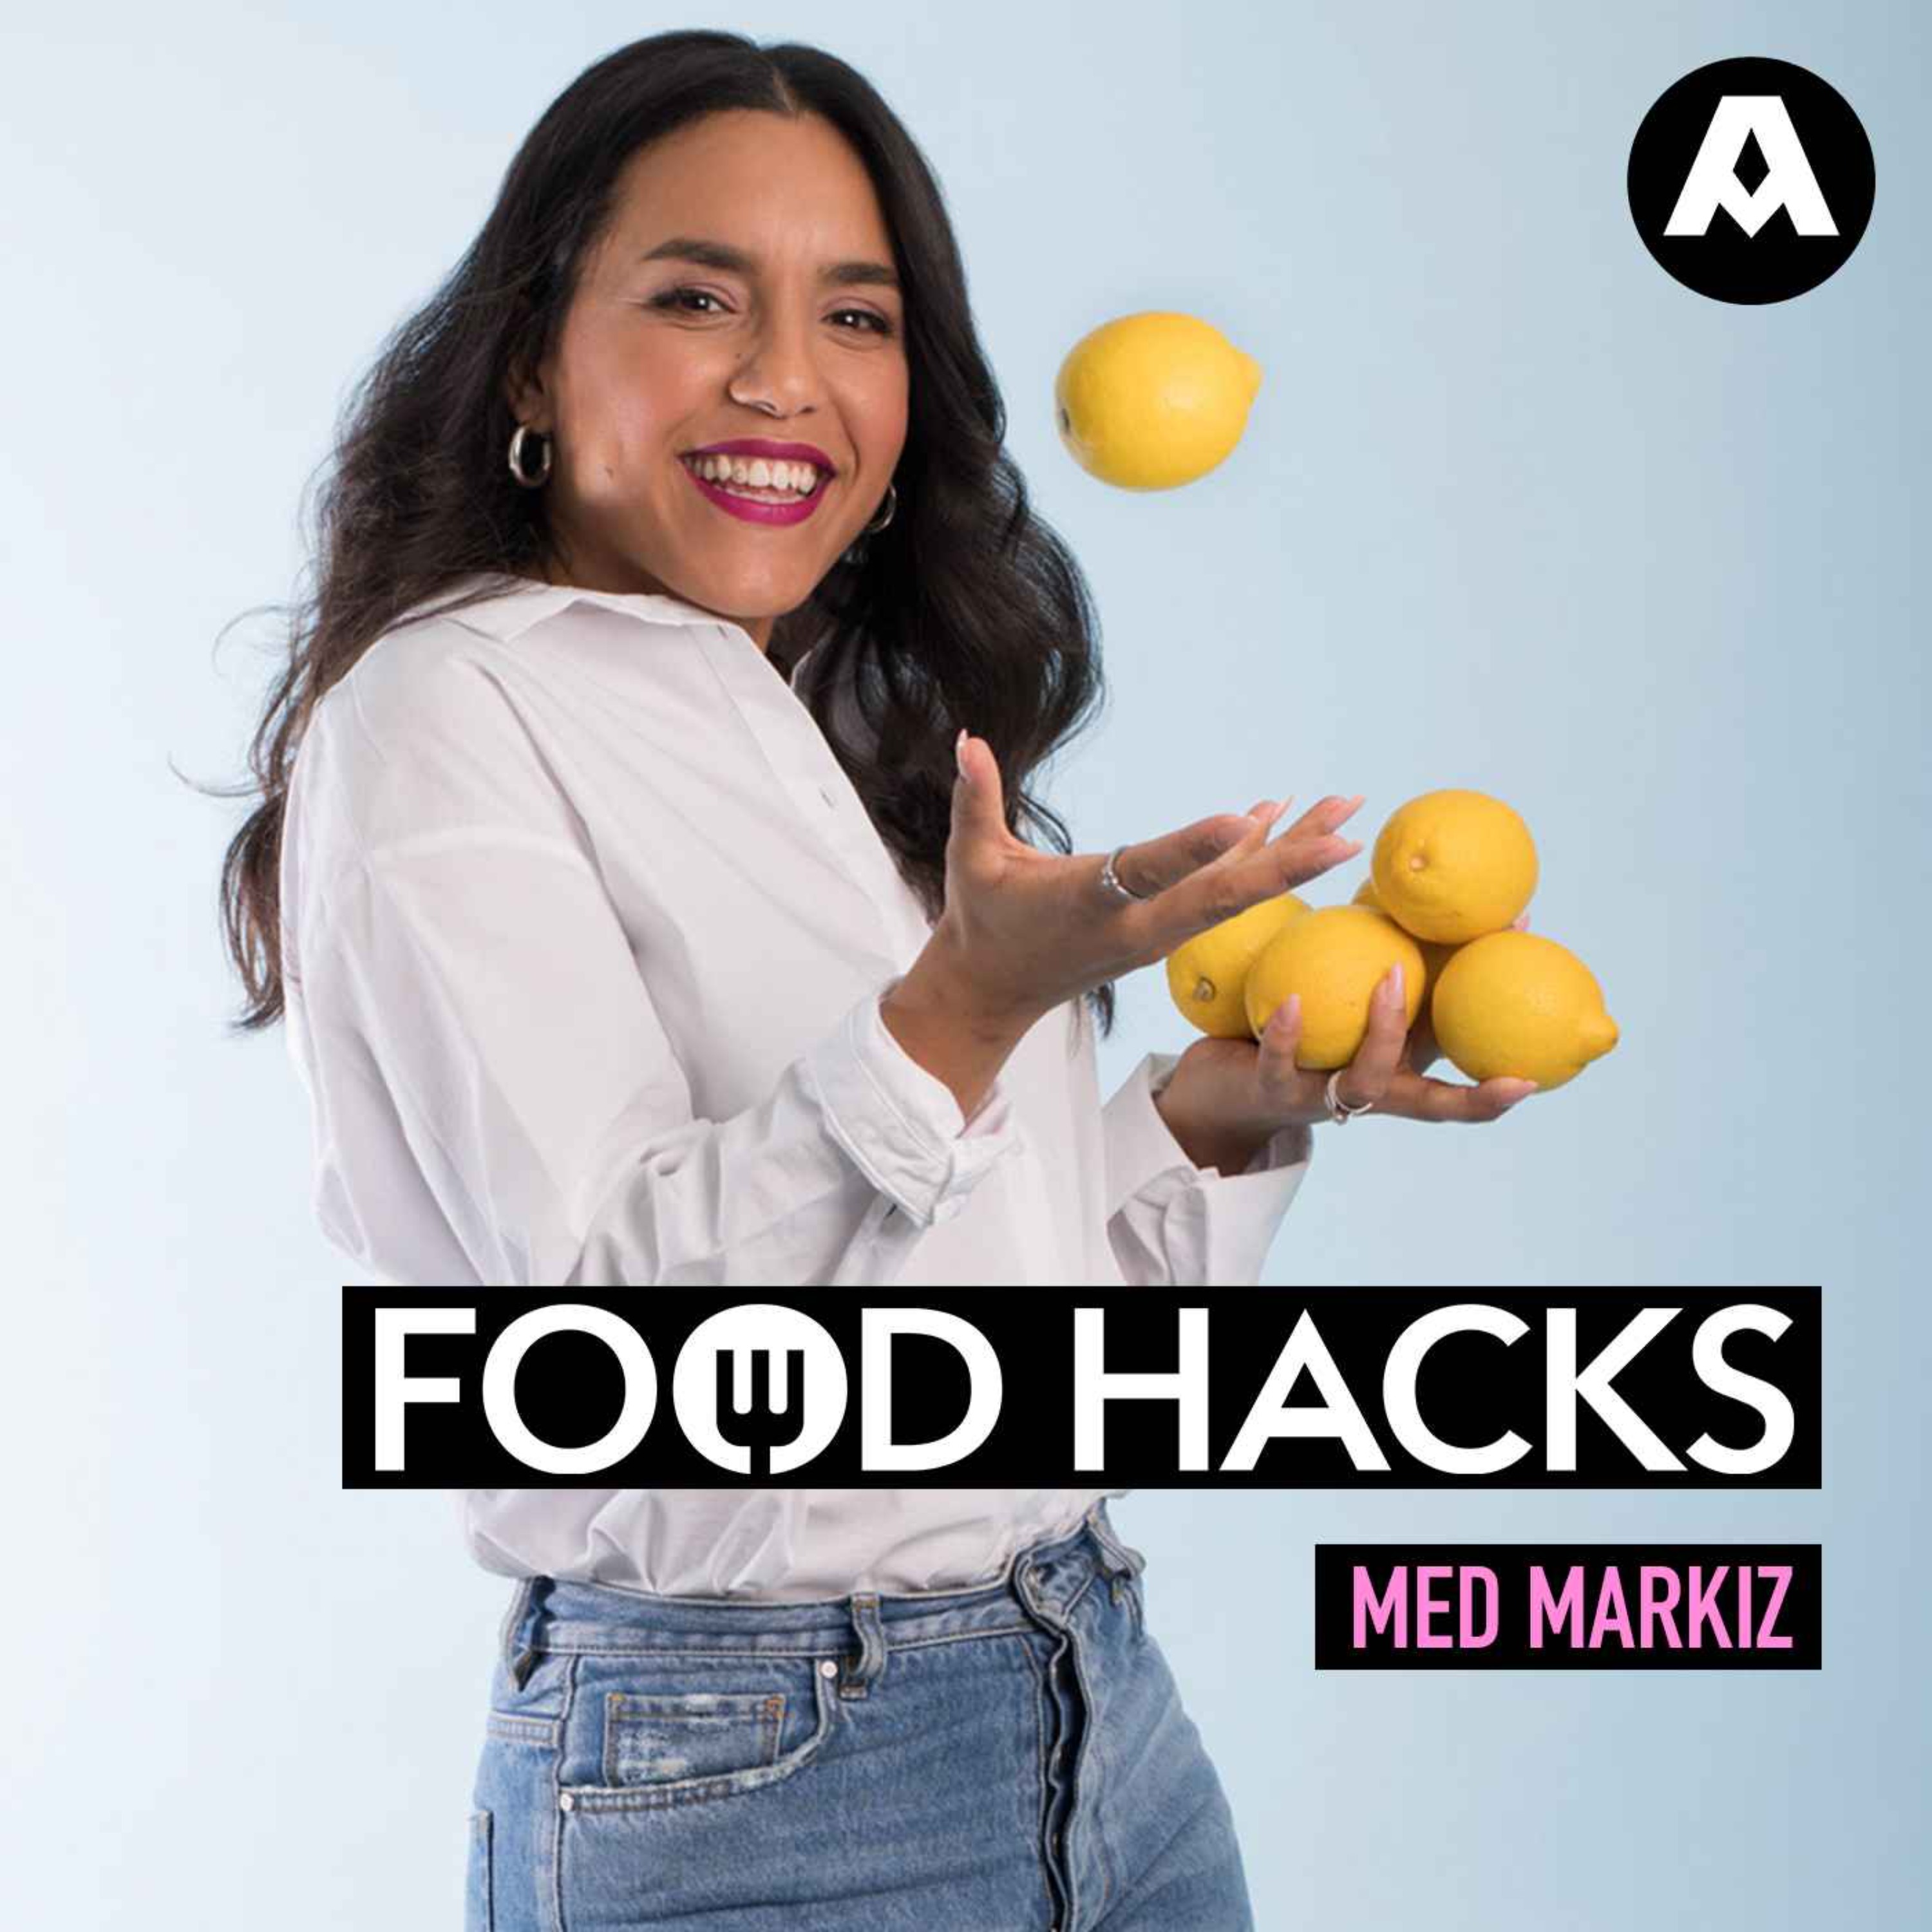 Food hacks: Så lyckas du med våfflorna!